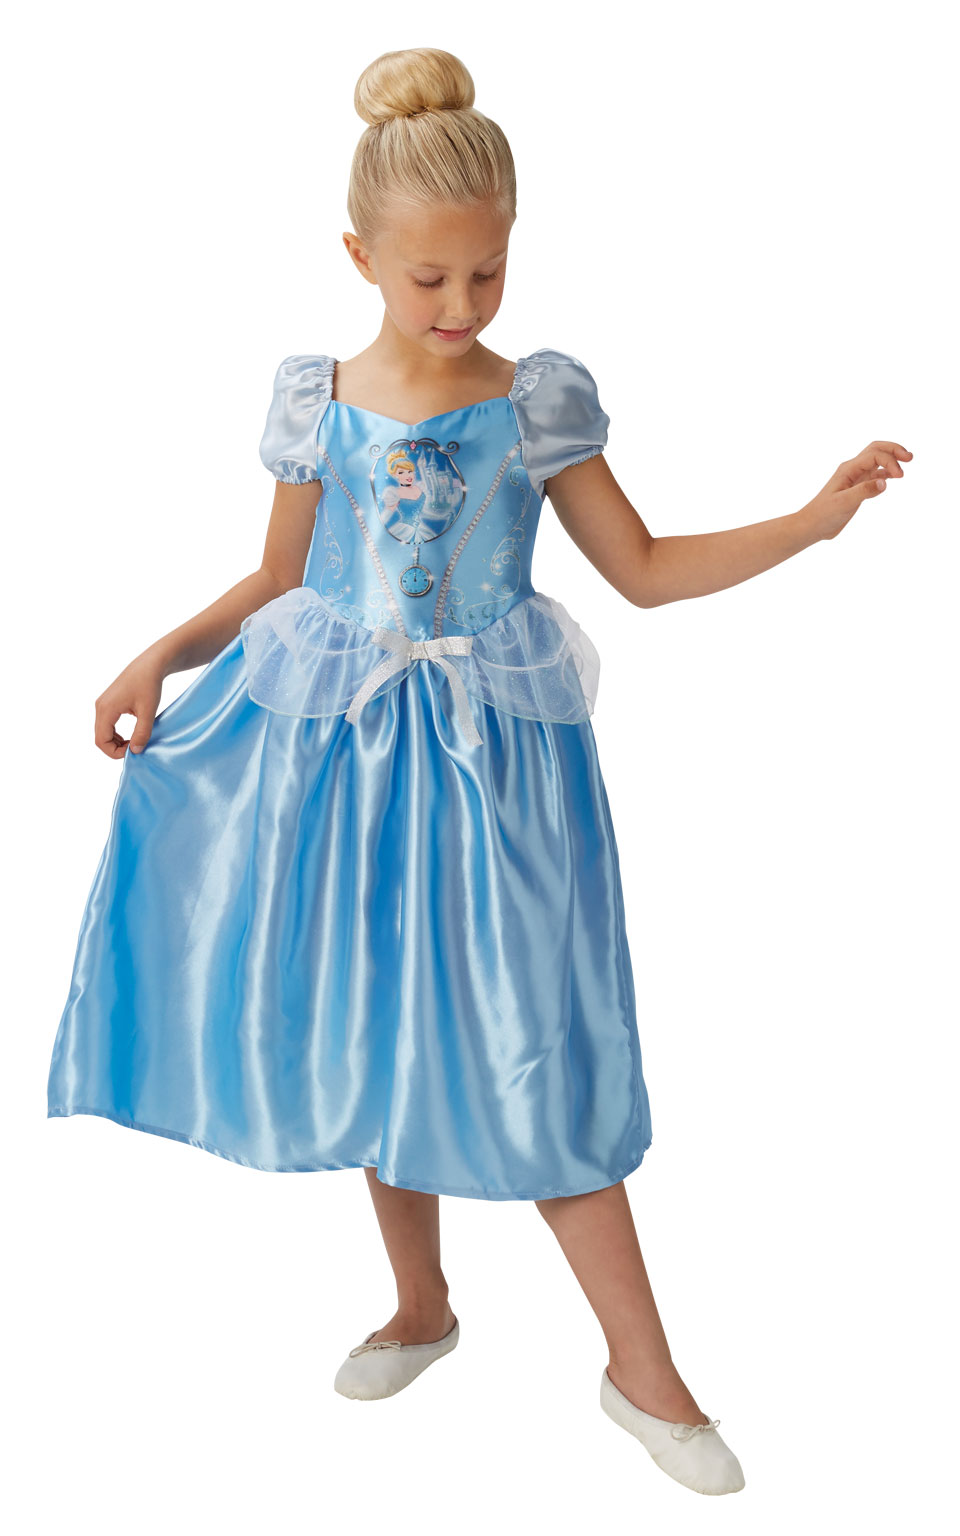 Disney Prinsesse Askepot Kostume til Kr. 199 - på lager til omgående levering